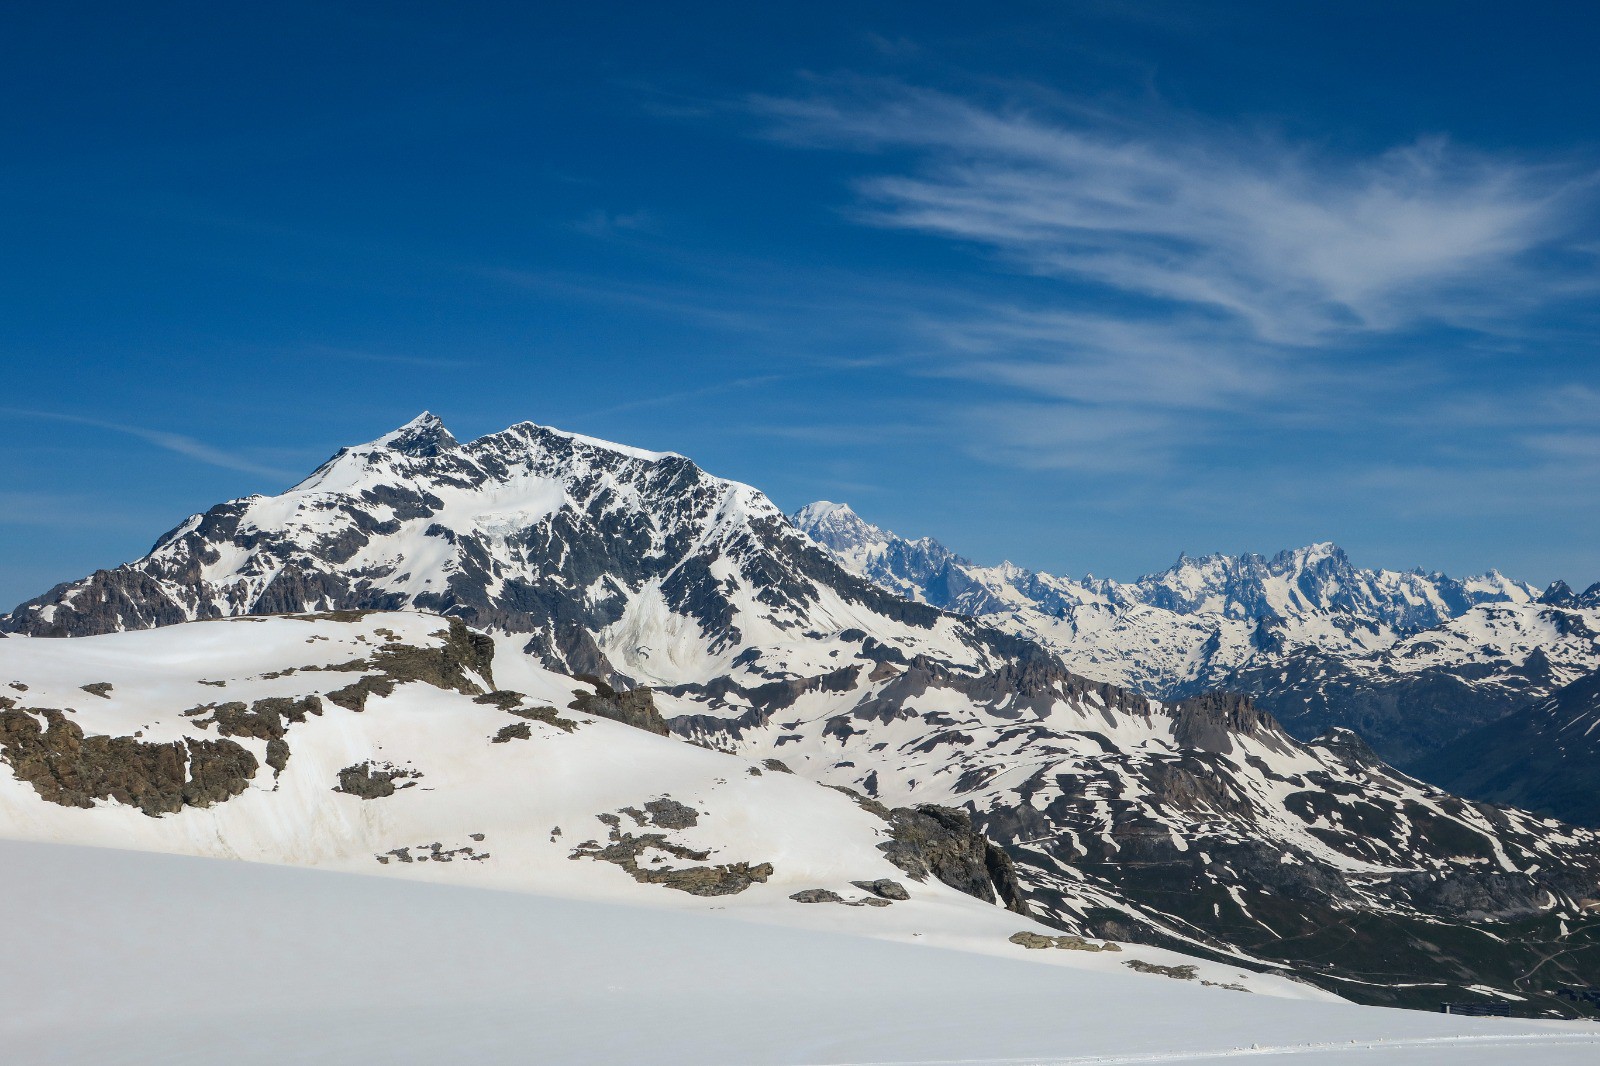 Pourri, Sache, Mt Blanc, Jorasses... 